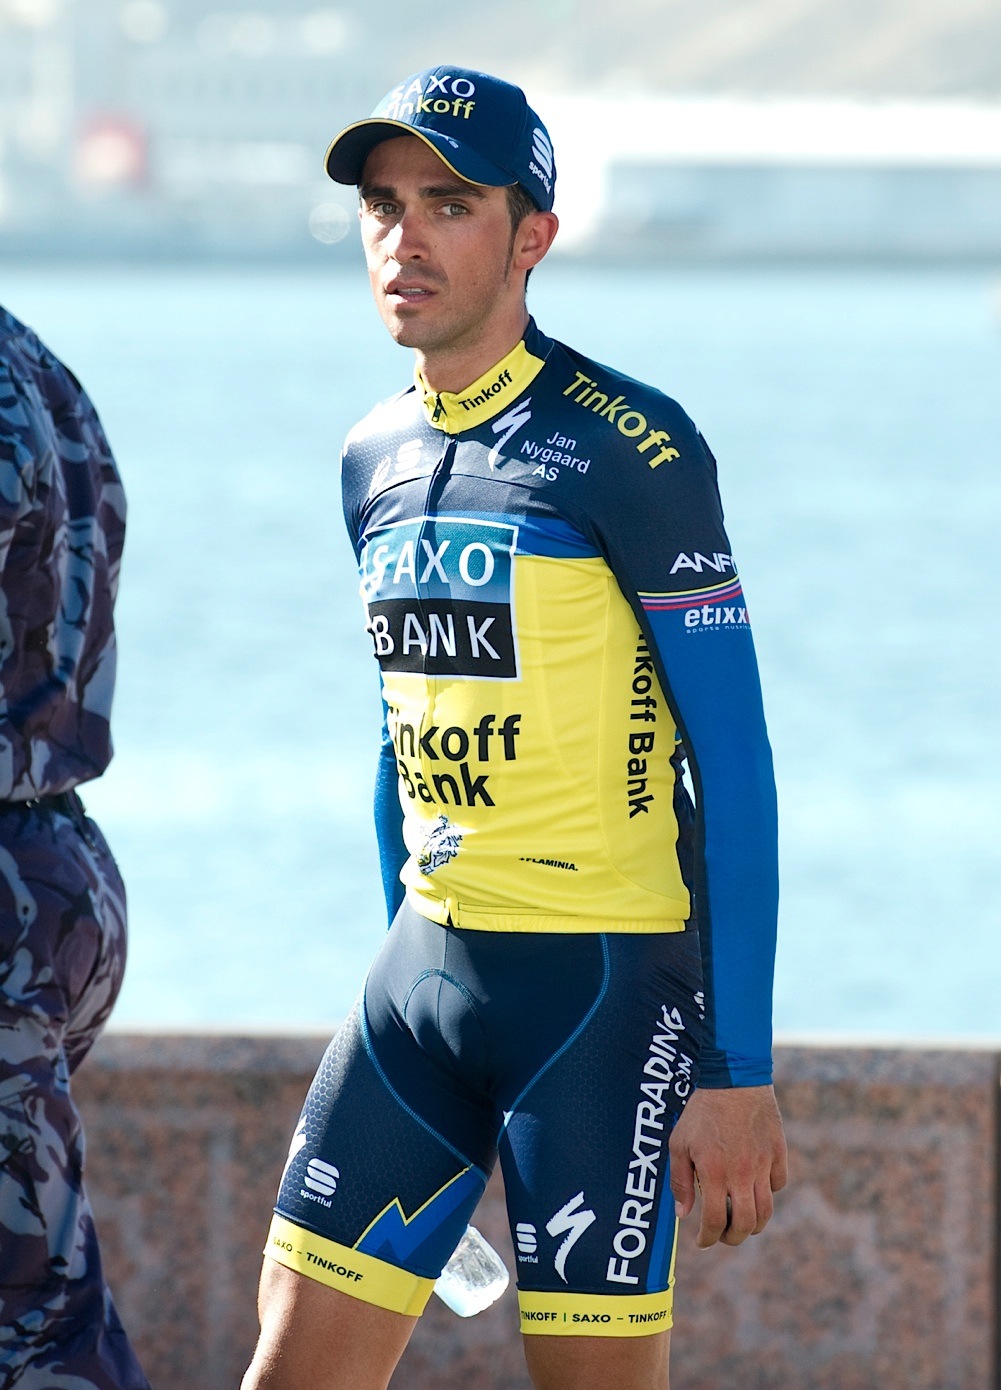 Contador ดูผิดหวังเล็กน้อยนะ 